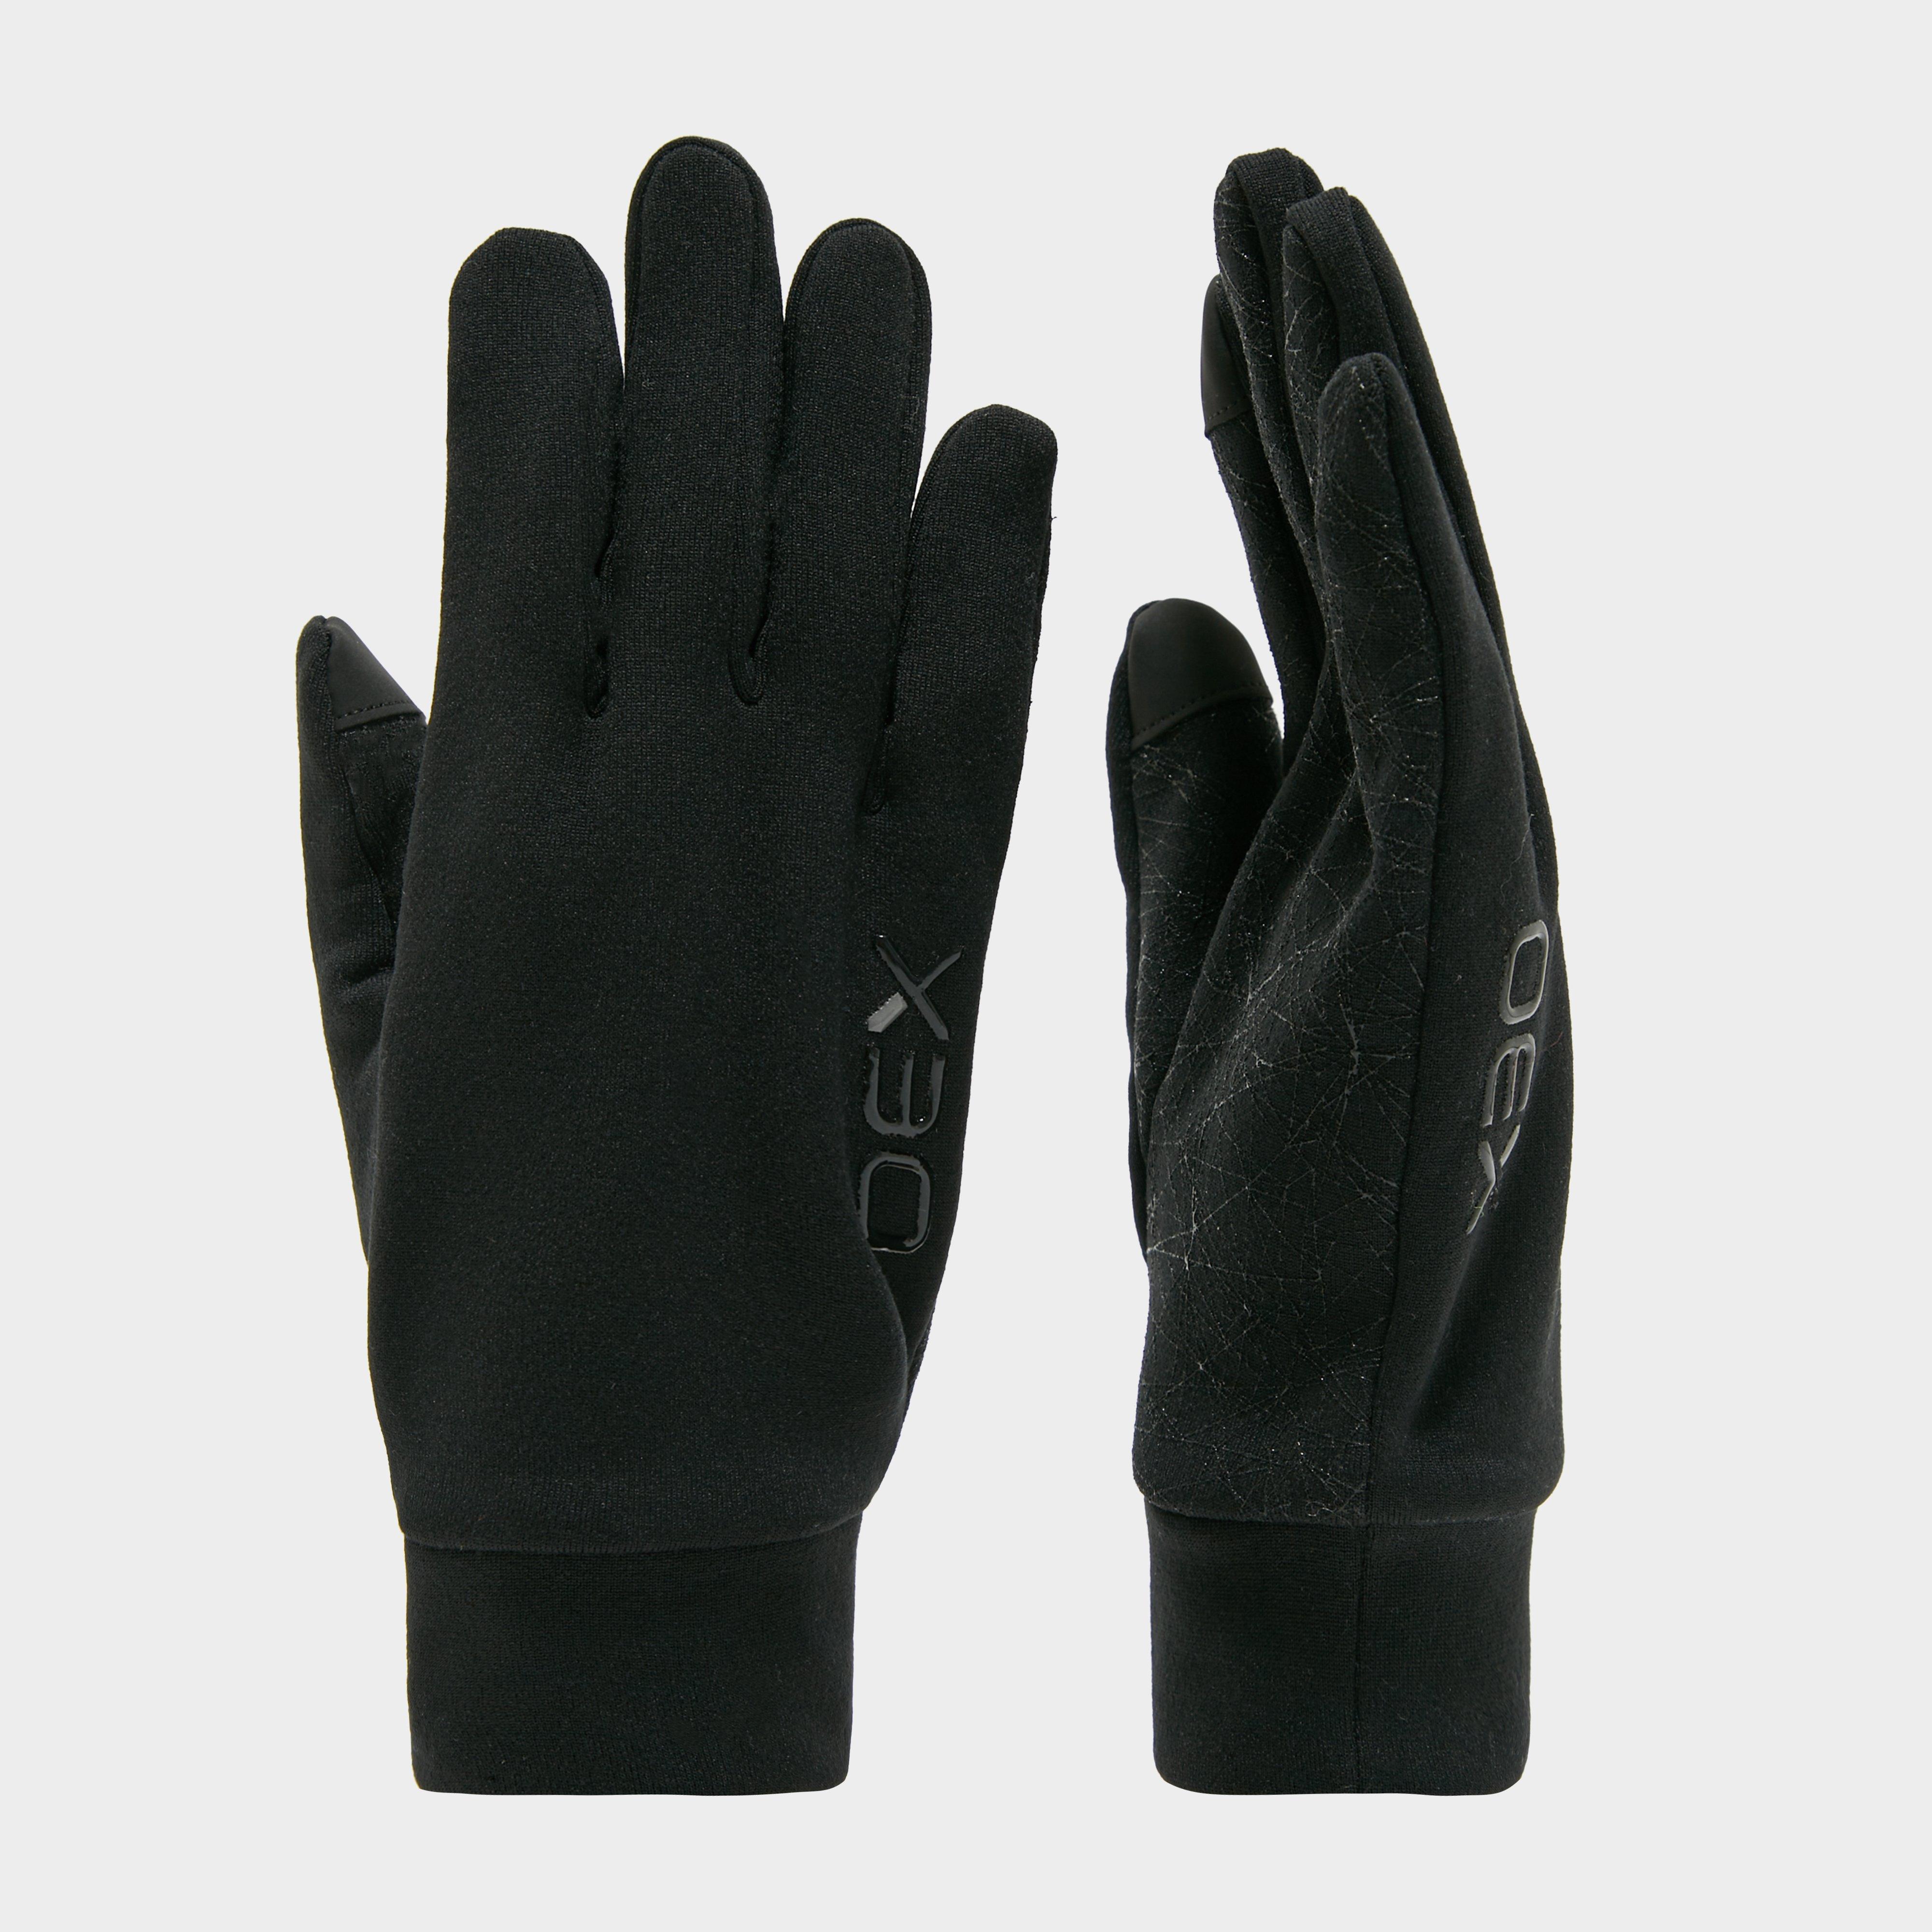 Oex Unisex Vostok Grip Gloves  Black